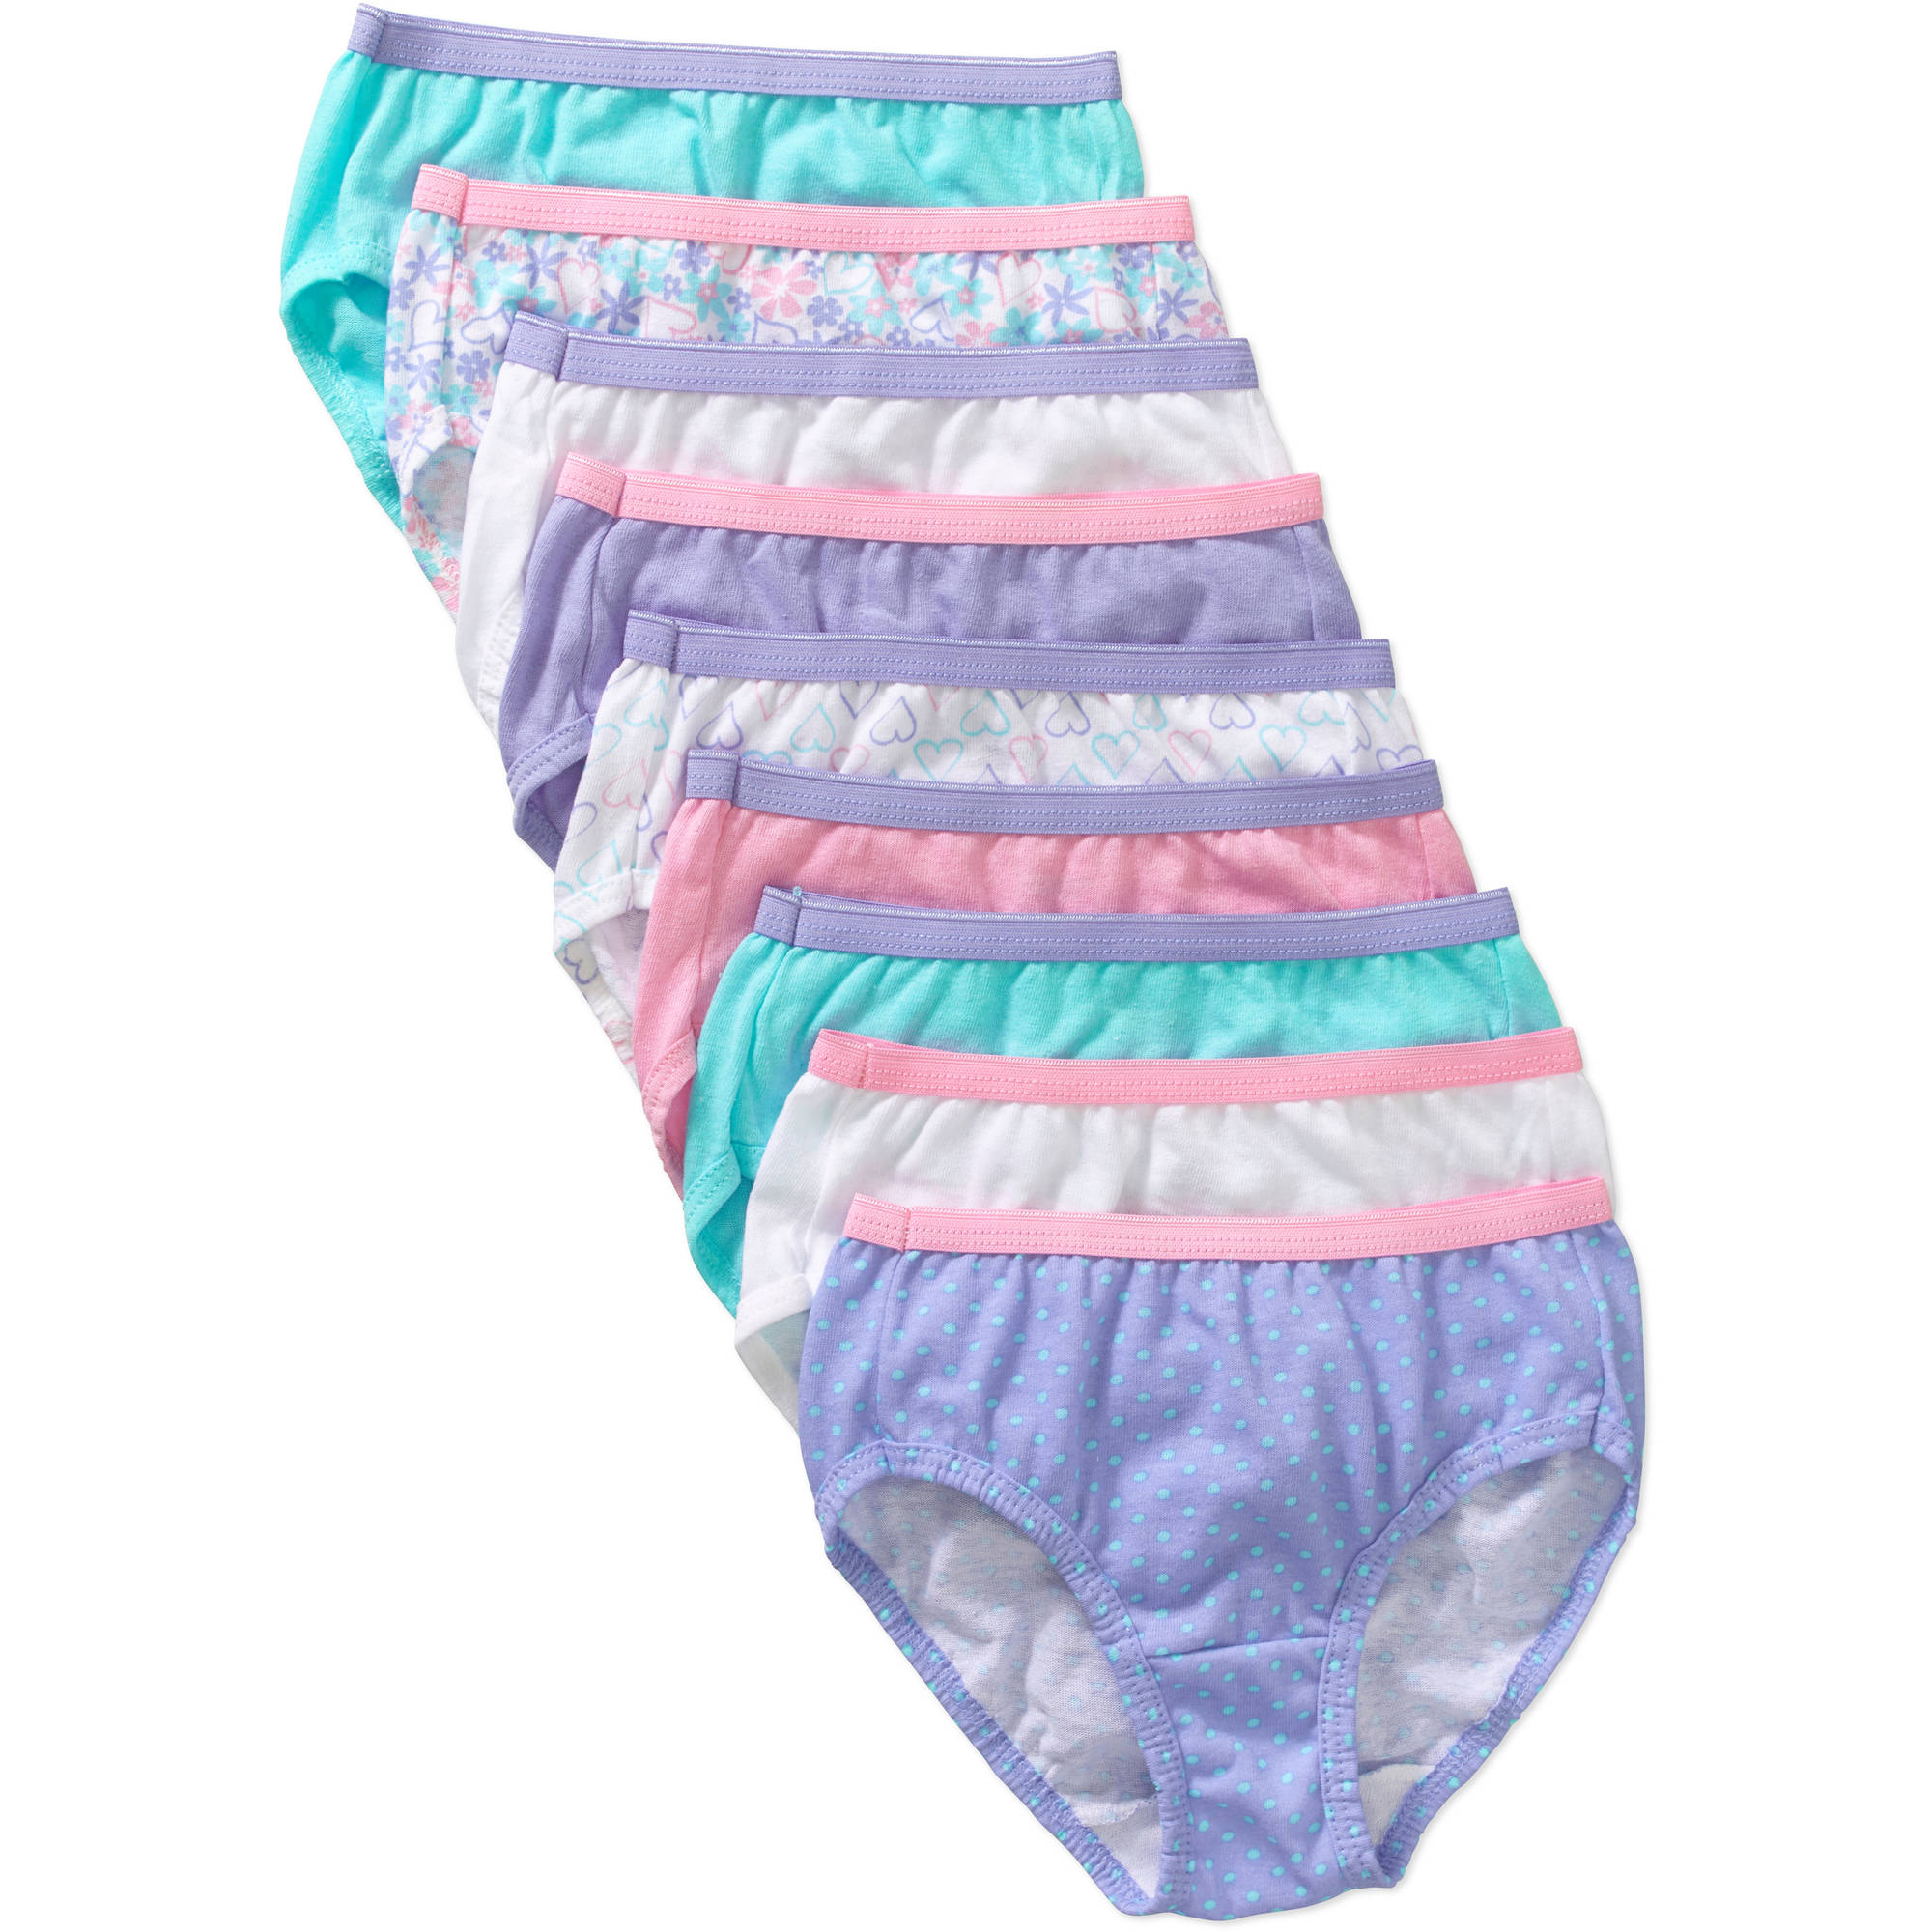 Hanes Girls Brief Underwear, 9 Pack - image 1 of 3